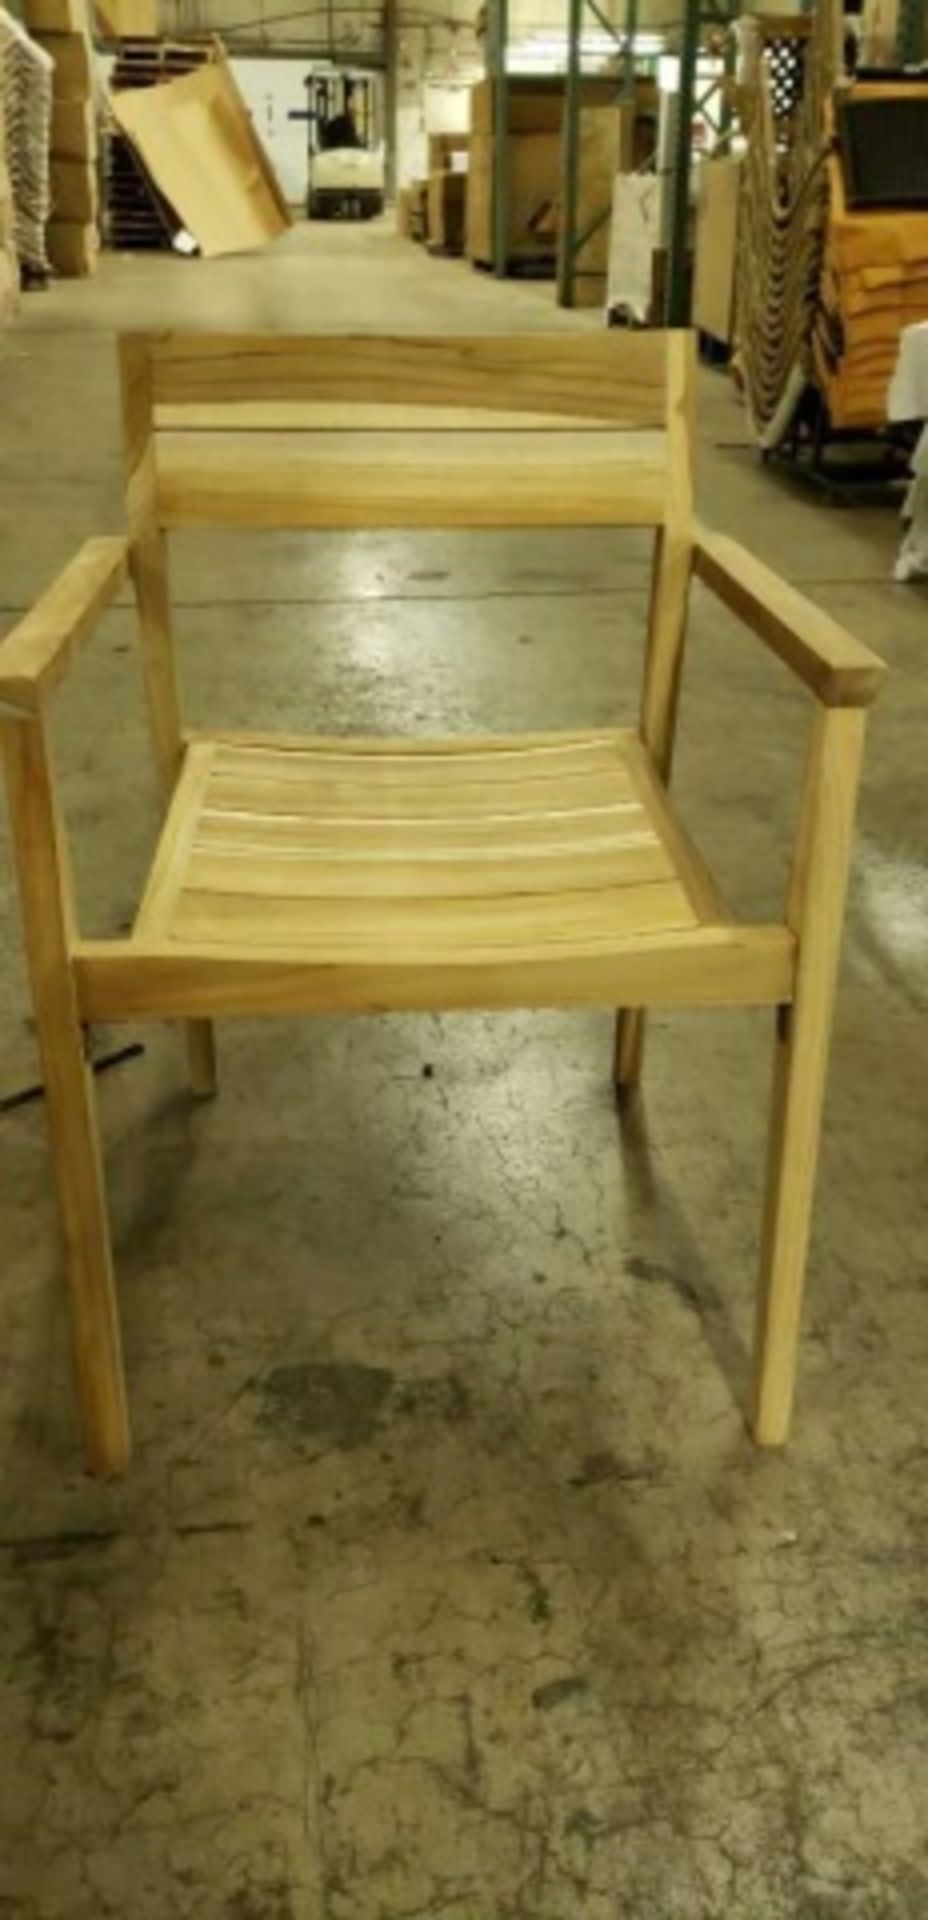 Kauai Arm Chair - Eno TT-71. Natural Teak. Dimensions: 22.5"w x 20.1"d x 30.1"h, 17.2"sh, 24.5"ah. - Image 2 of 5